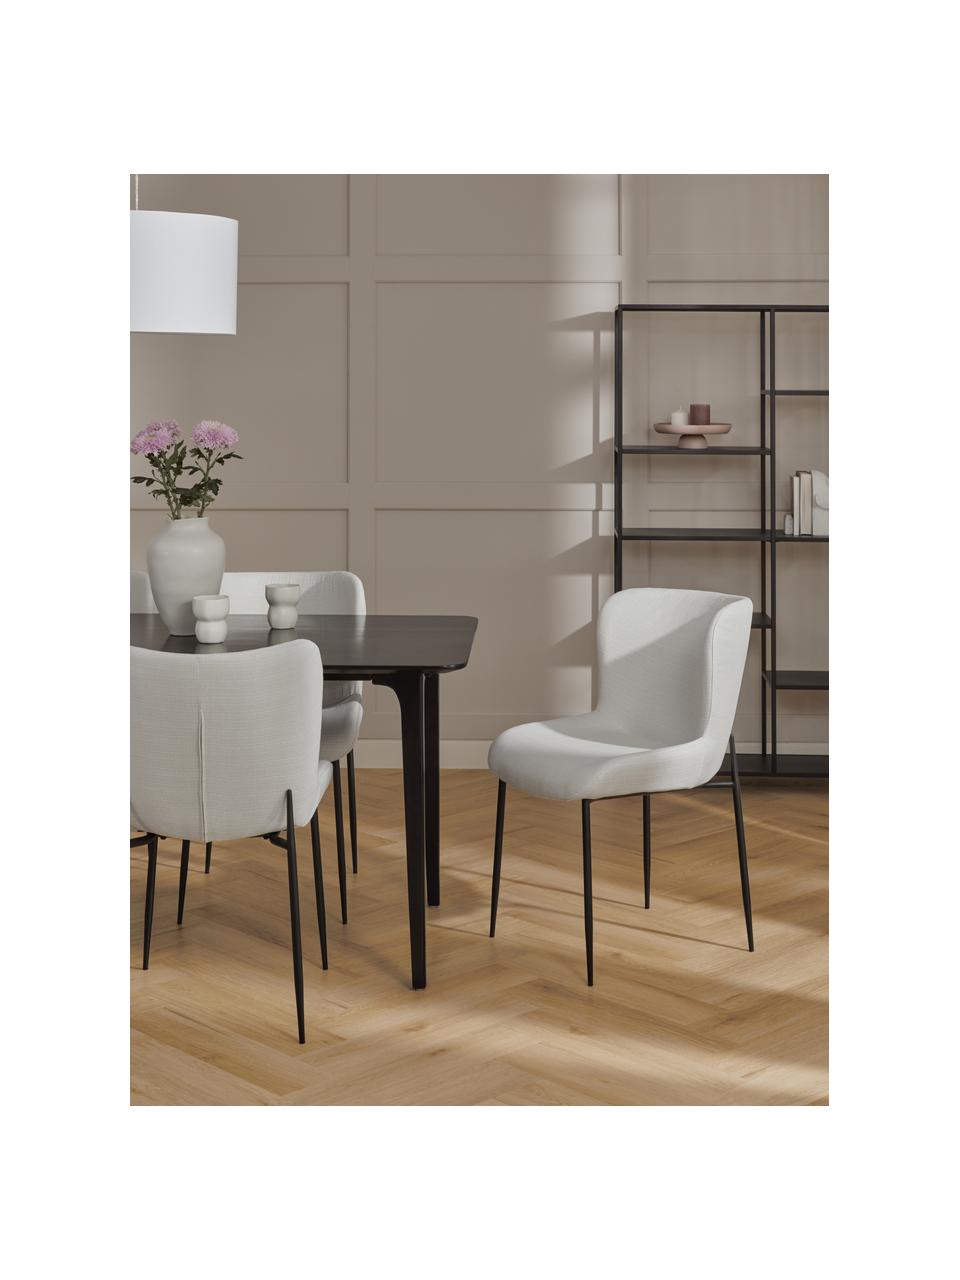 Gestoffeerde stoel Tess in crèmewit, Bekleding: polyester, Poten: gepoedercoat metaal, Geweven stof crèmewit, poten zwart, B 49 x D 64 cm